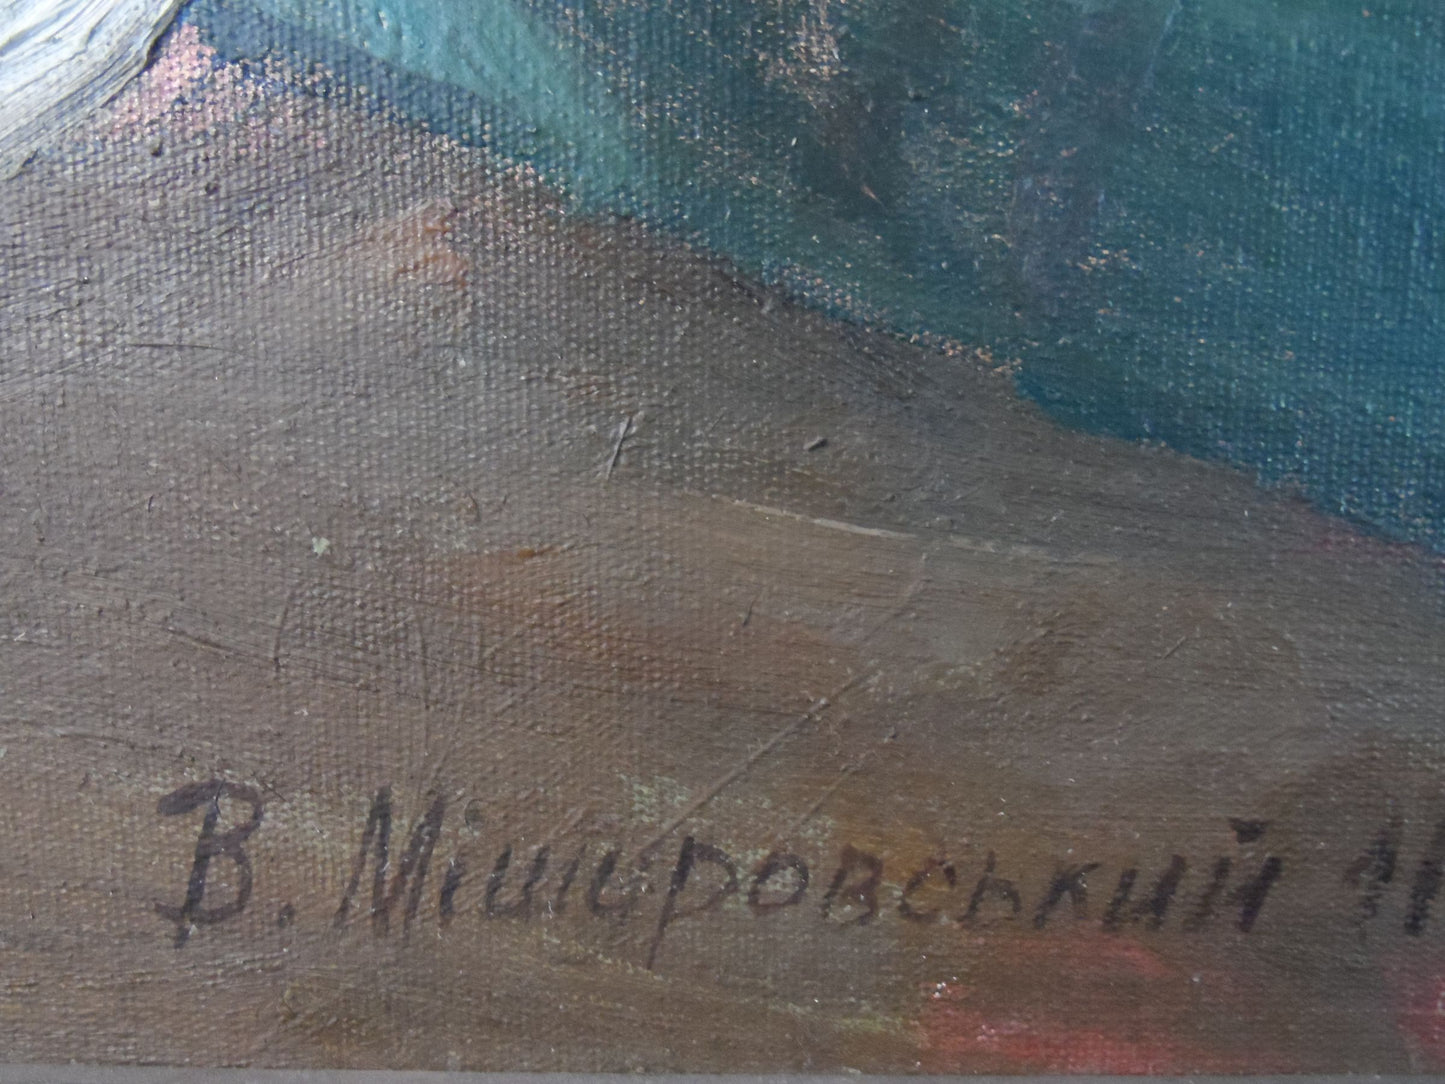 Oil painting Old fishing treats Mishurovsky V. V.